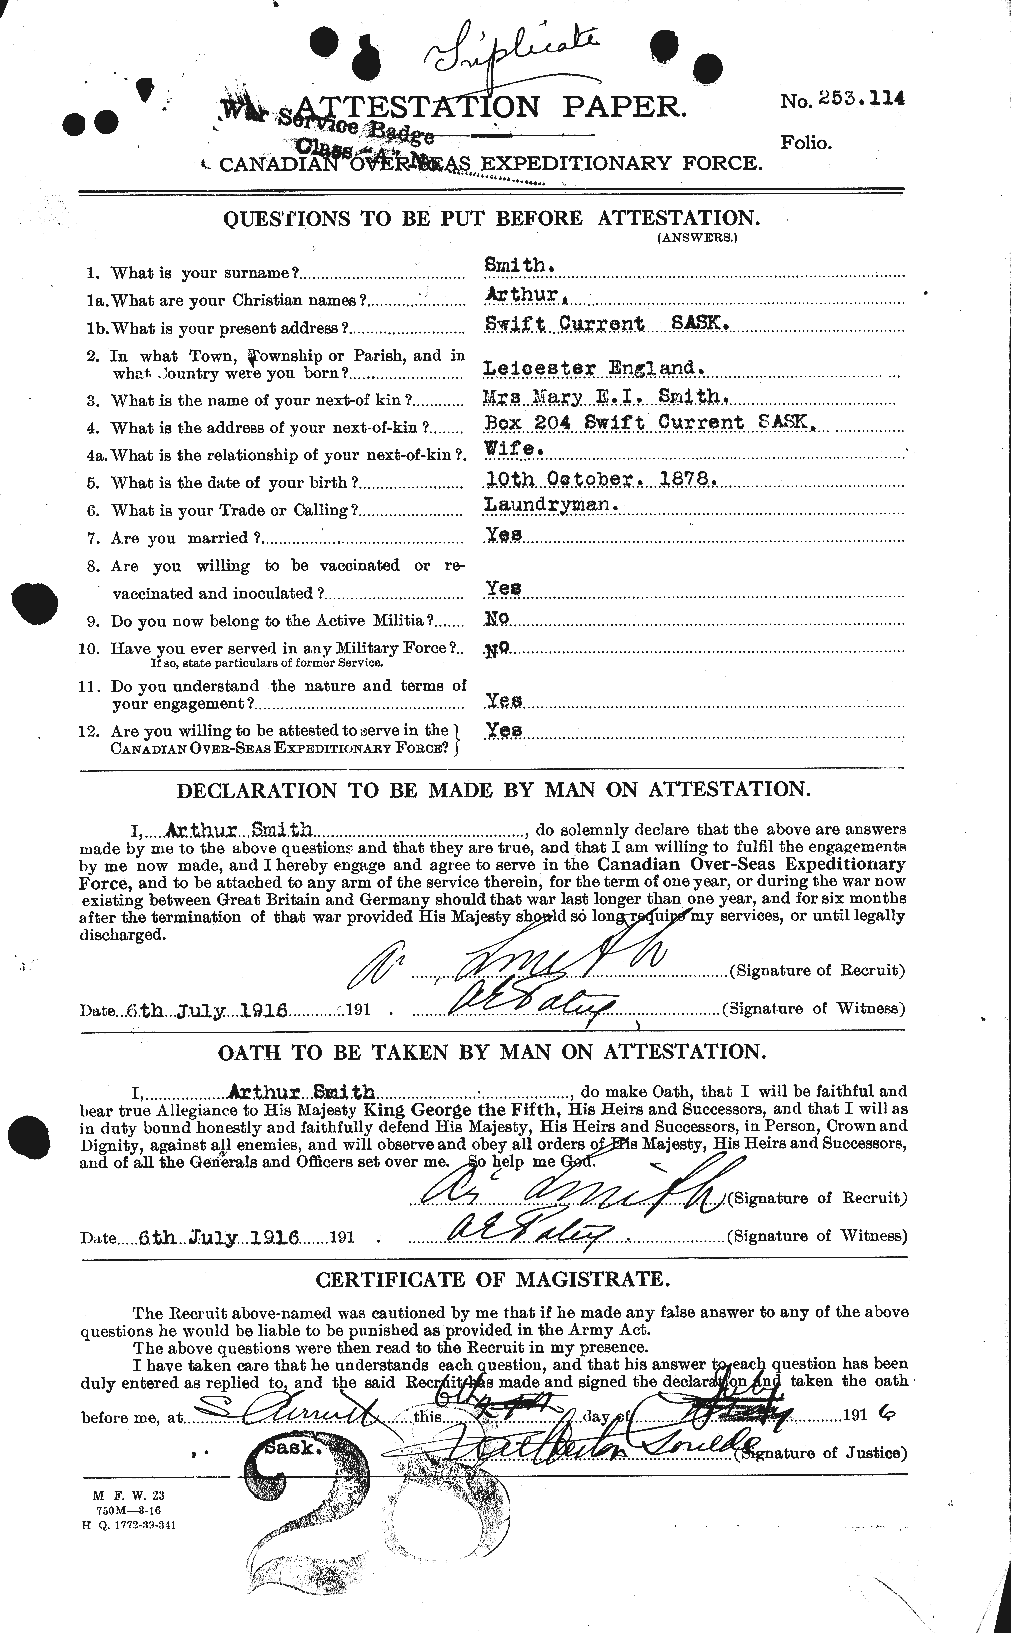 Dossiers du Personnel de la Première Guerre mondiale - CEC 101986a